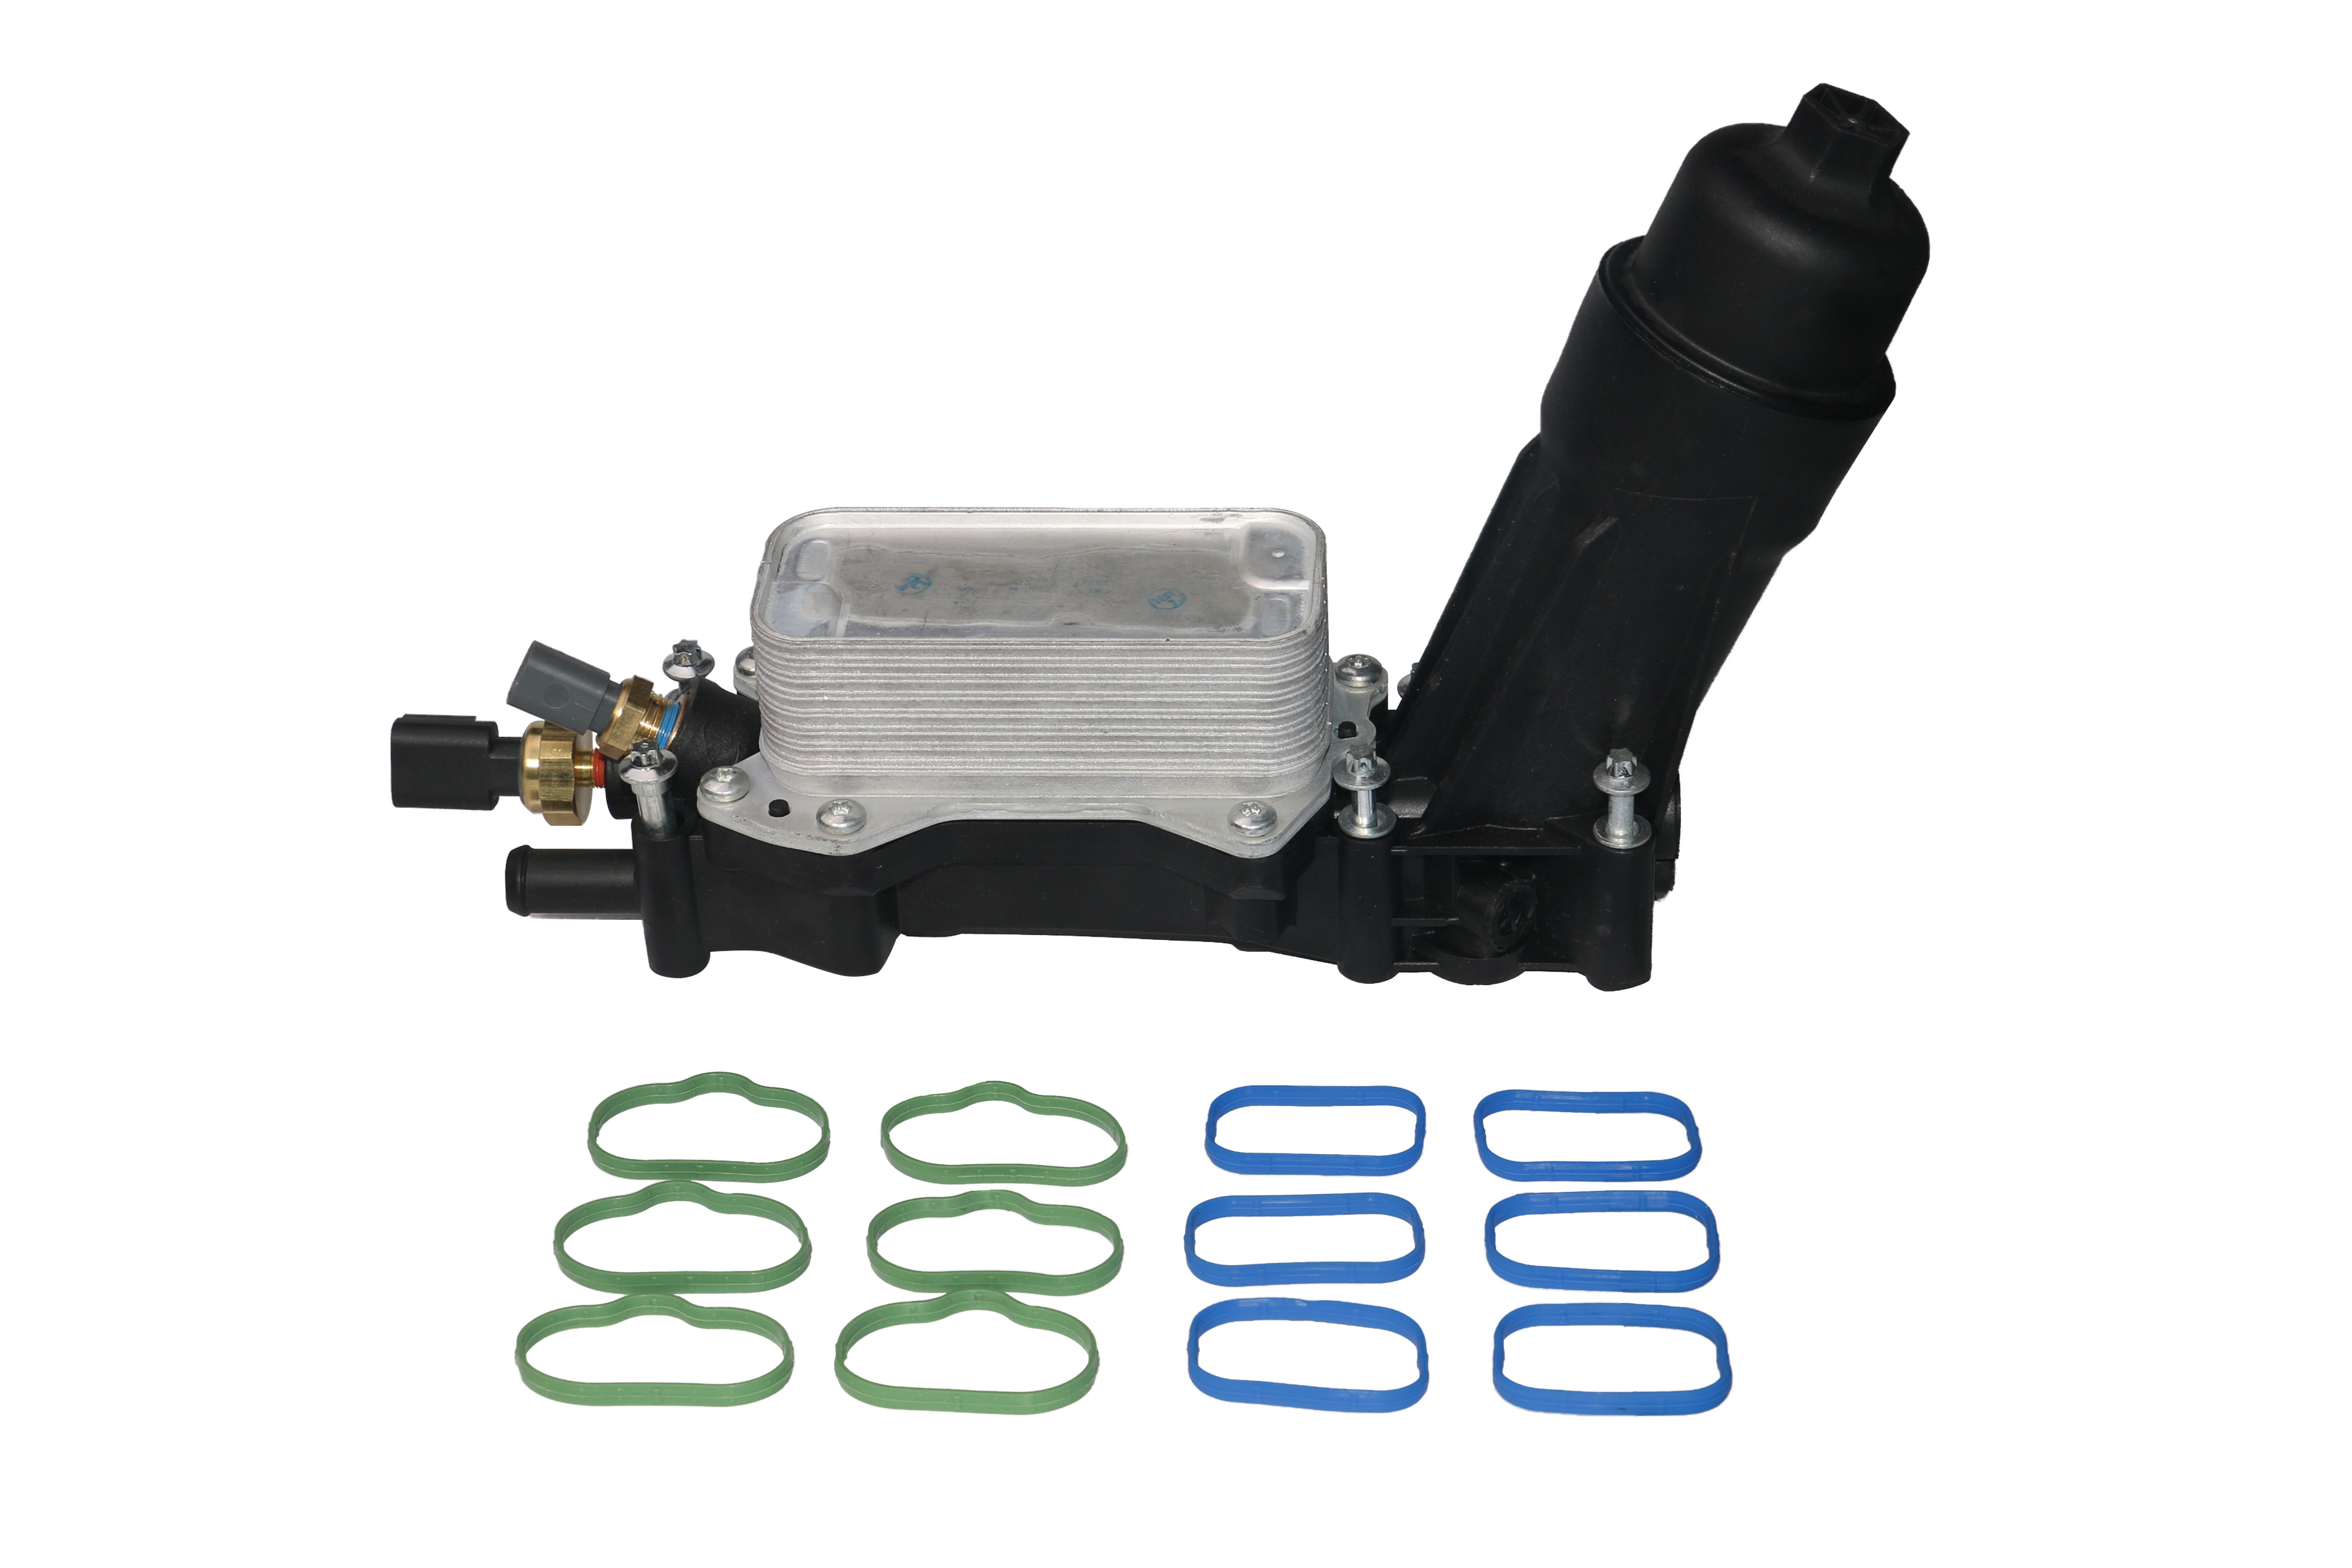 Engine Oil Cooler & Filter Housing Adapter Kit - Replaces# 68105583AF, 68105583AE - Fits 3.6L V6 Image